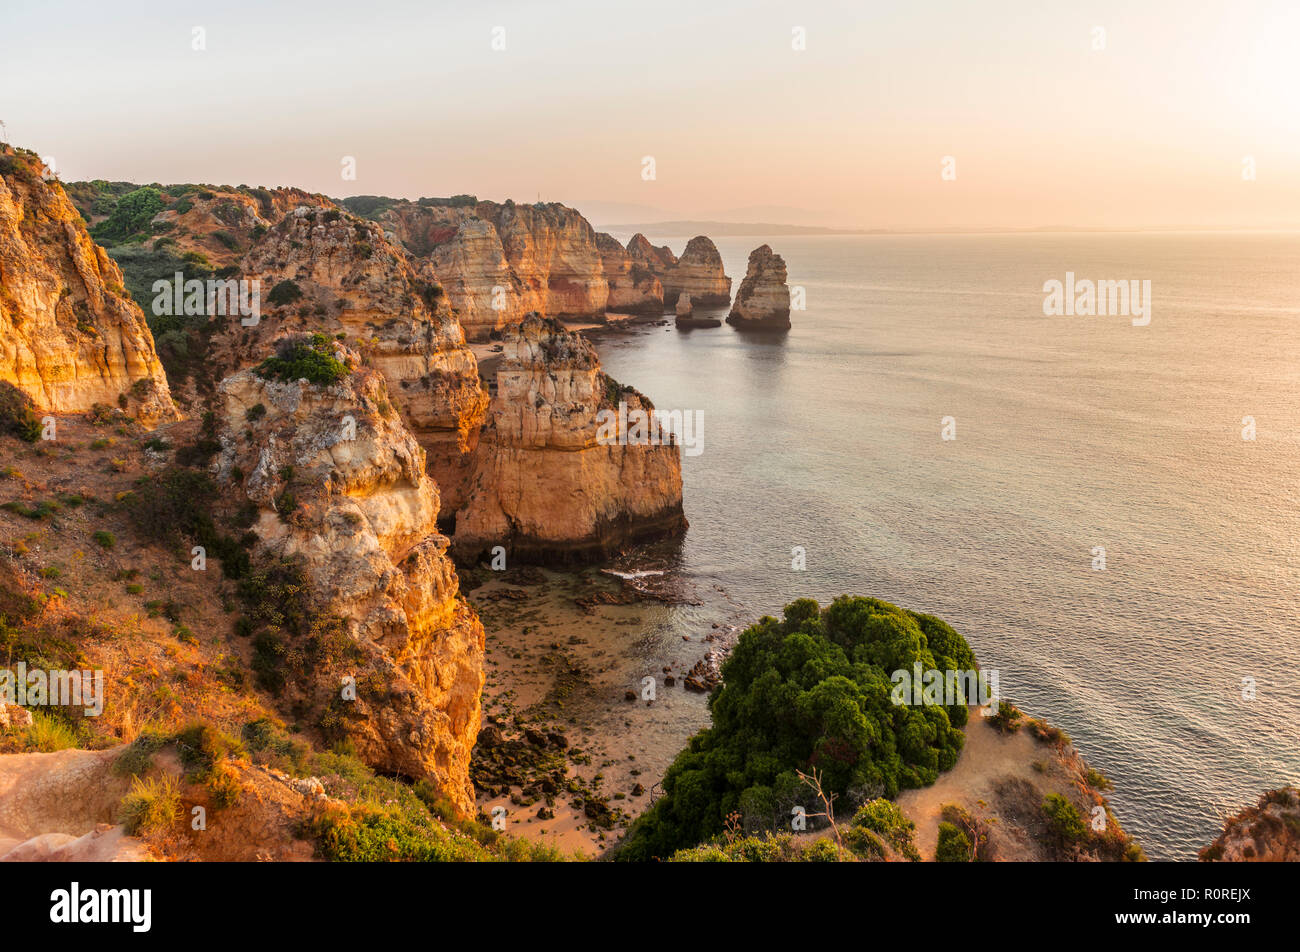 Sonnenaufgang über dem Meer, an der felsigen Küste von Sandstein, Felsformationen im Meer, Algarve, Lagos, Portugal Stockfoto